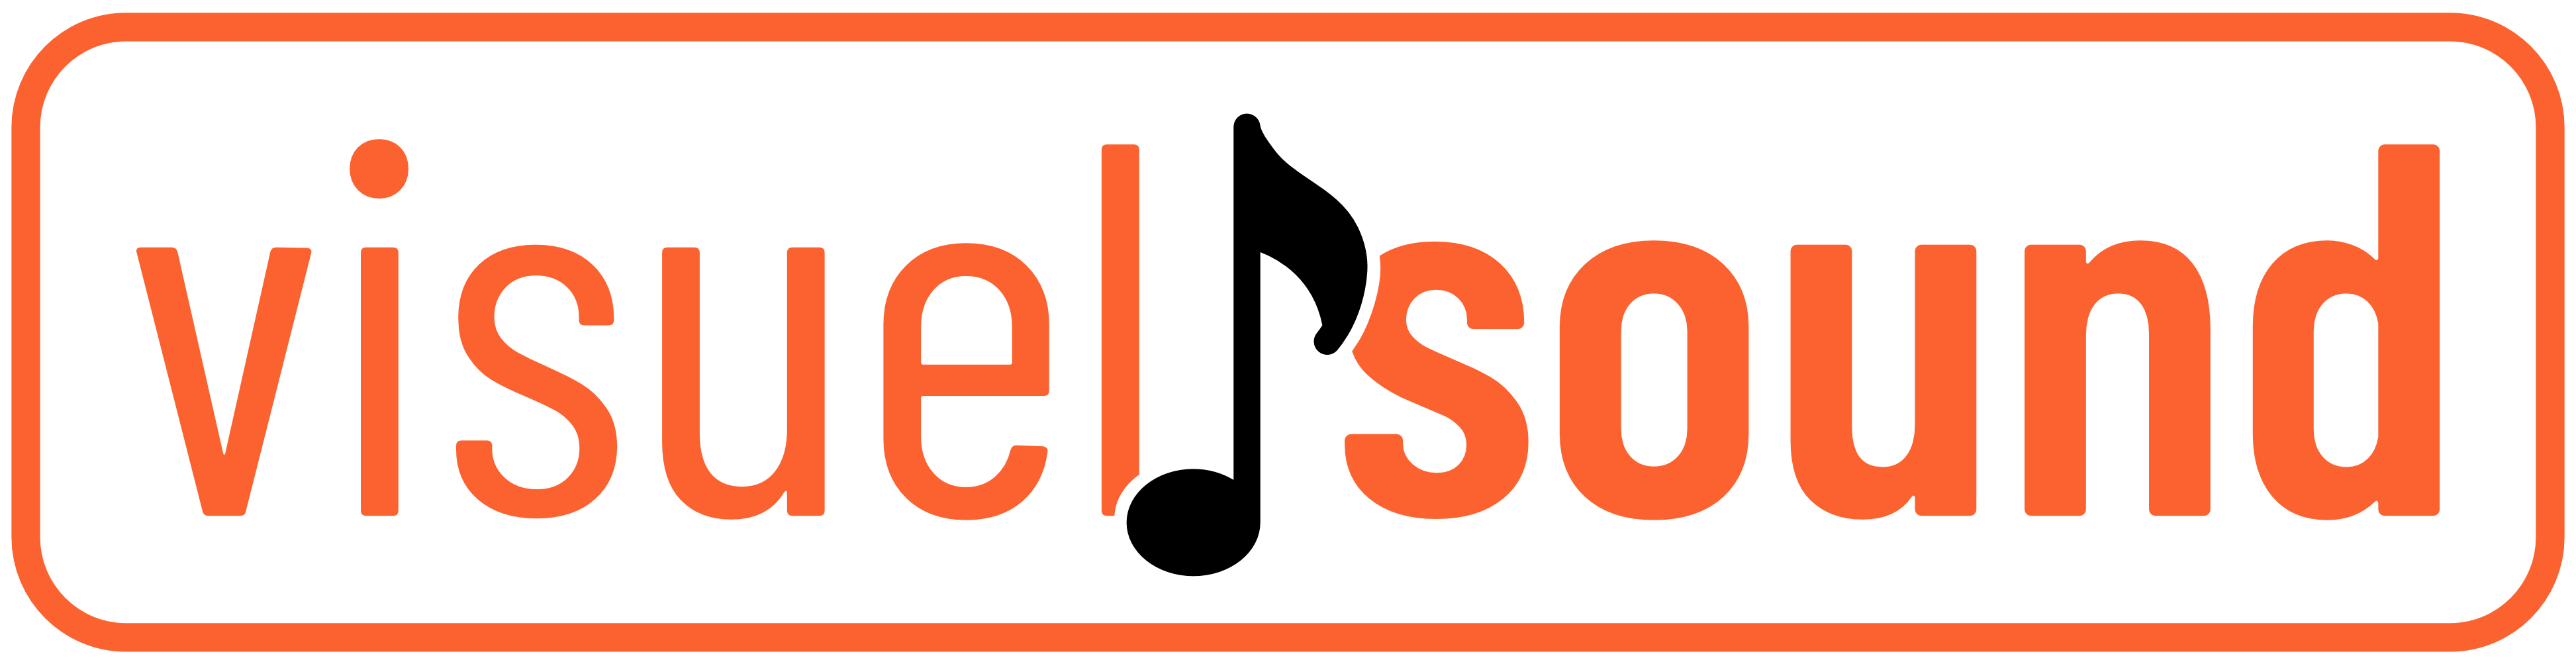 VS.logo-long-contour_note=noir&contour+lettres=orange.png (95 KB)